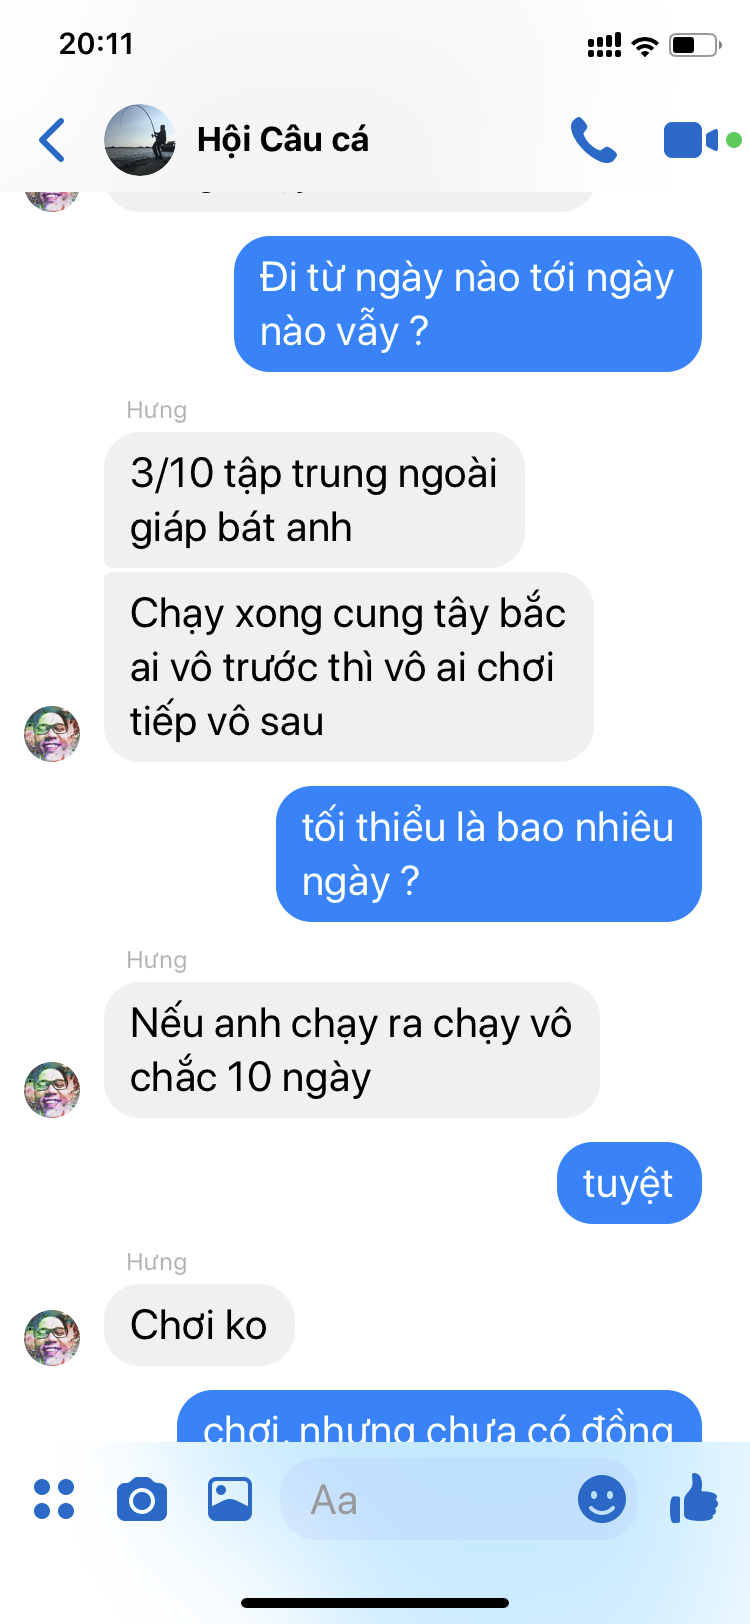 Sài Gòn - Hà Nội : lần đầu làm chuyện ấy